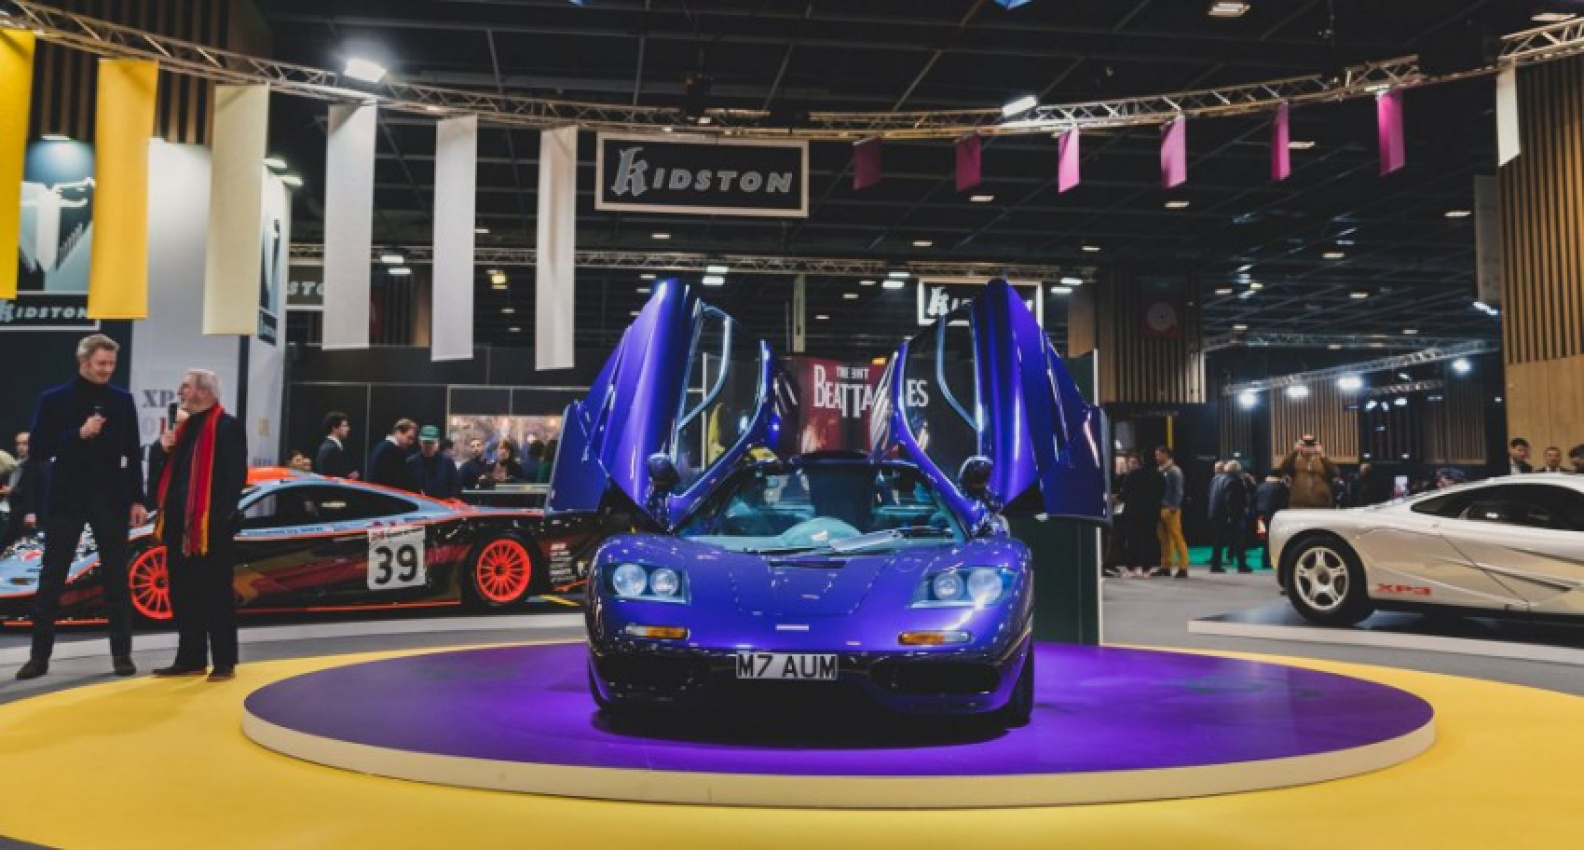 autos, cars, mclaren, kidston stuns paris with an exhibition of seven magnificent mclaren f1s